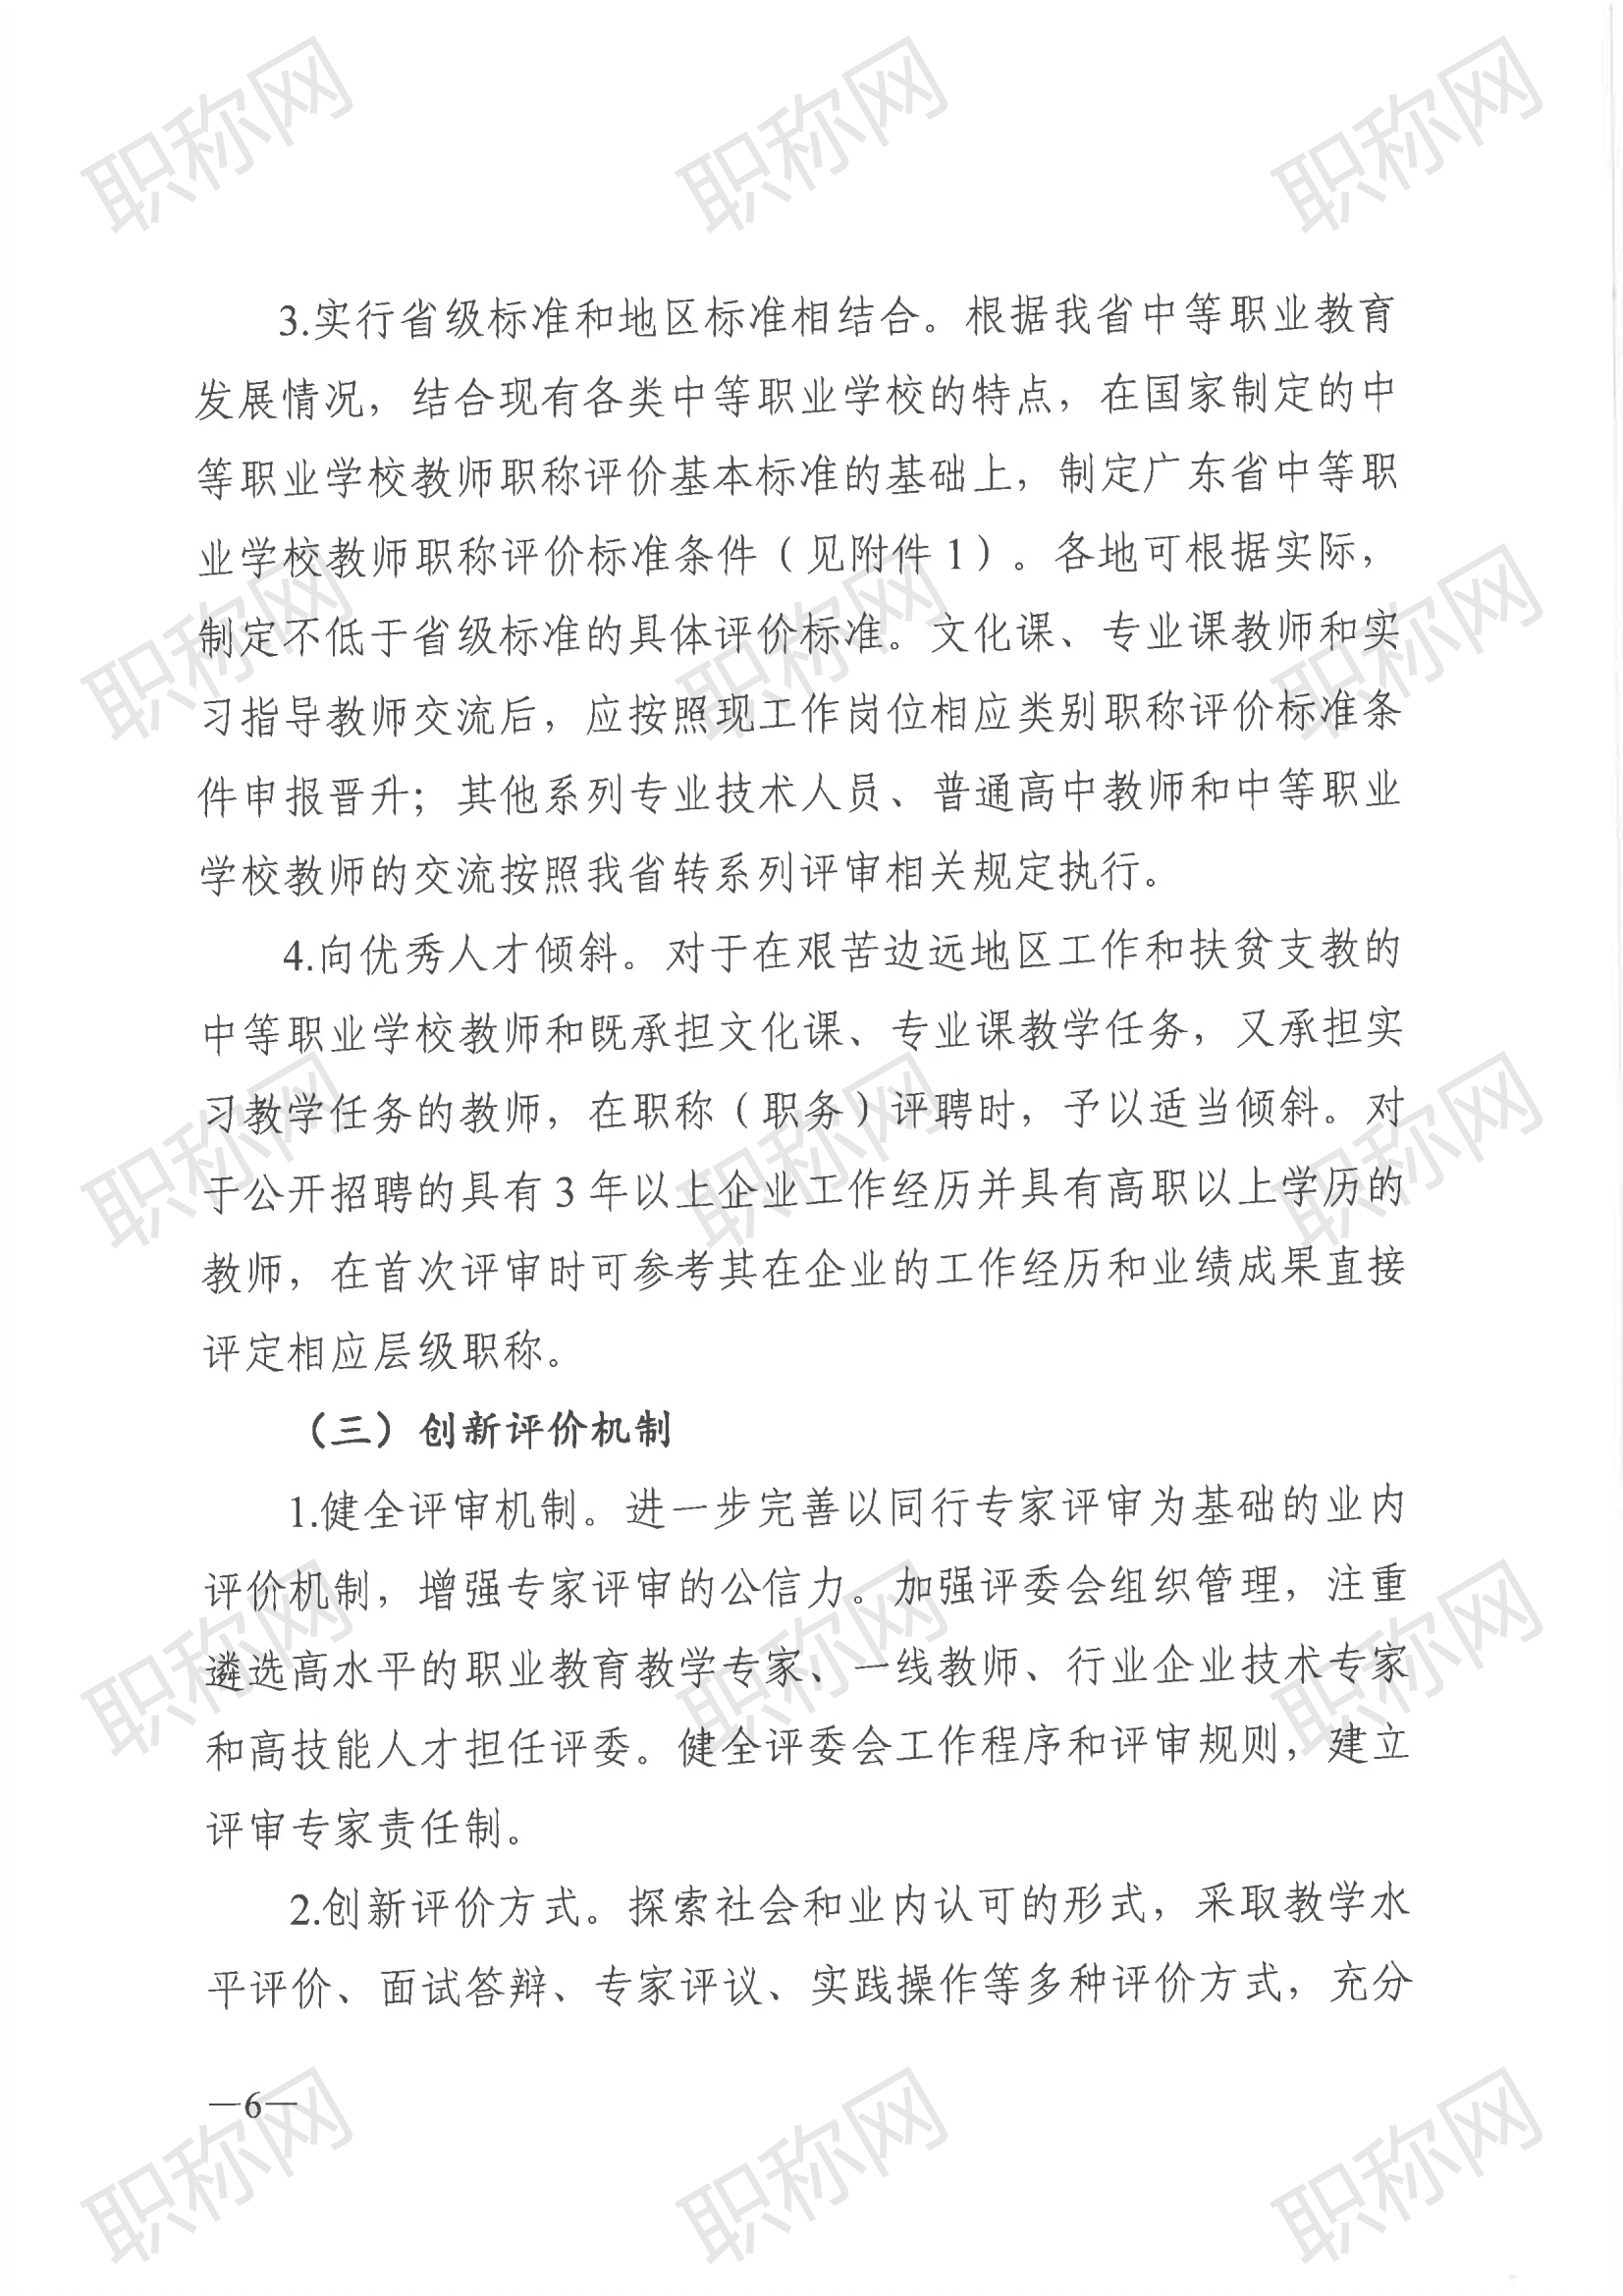 广东省深化中等职业学校教师职称制度改革实施方案》的通知_05.png